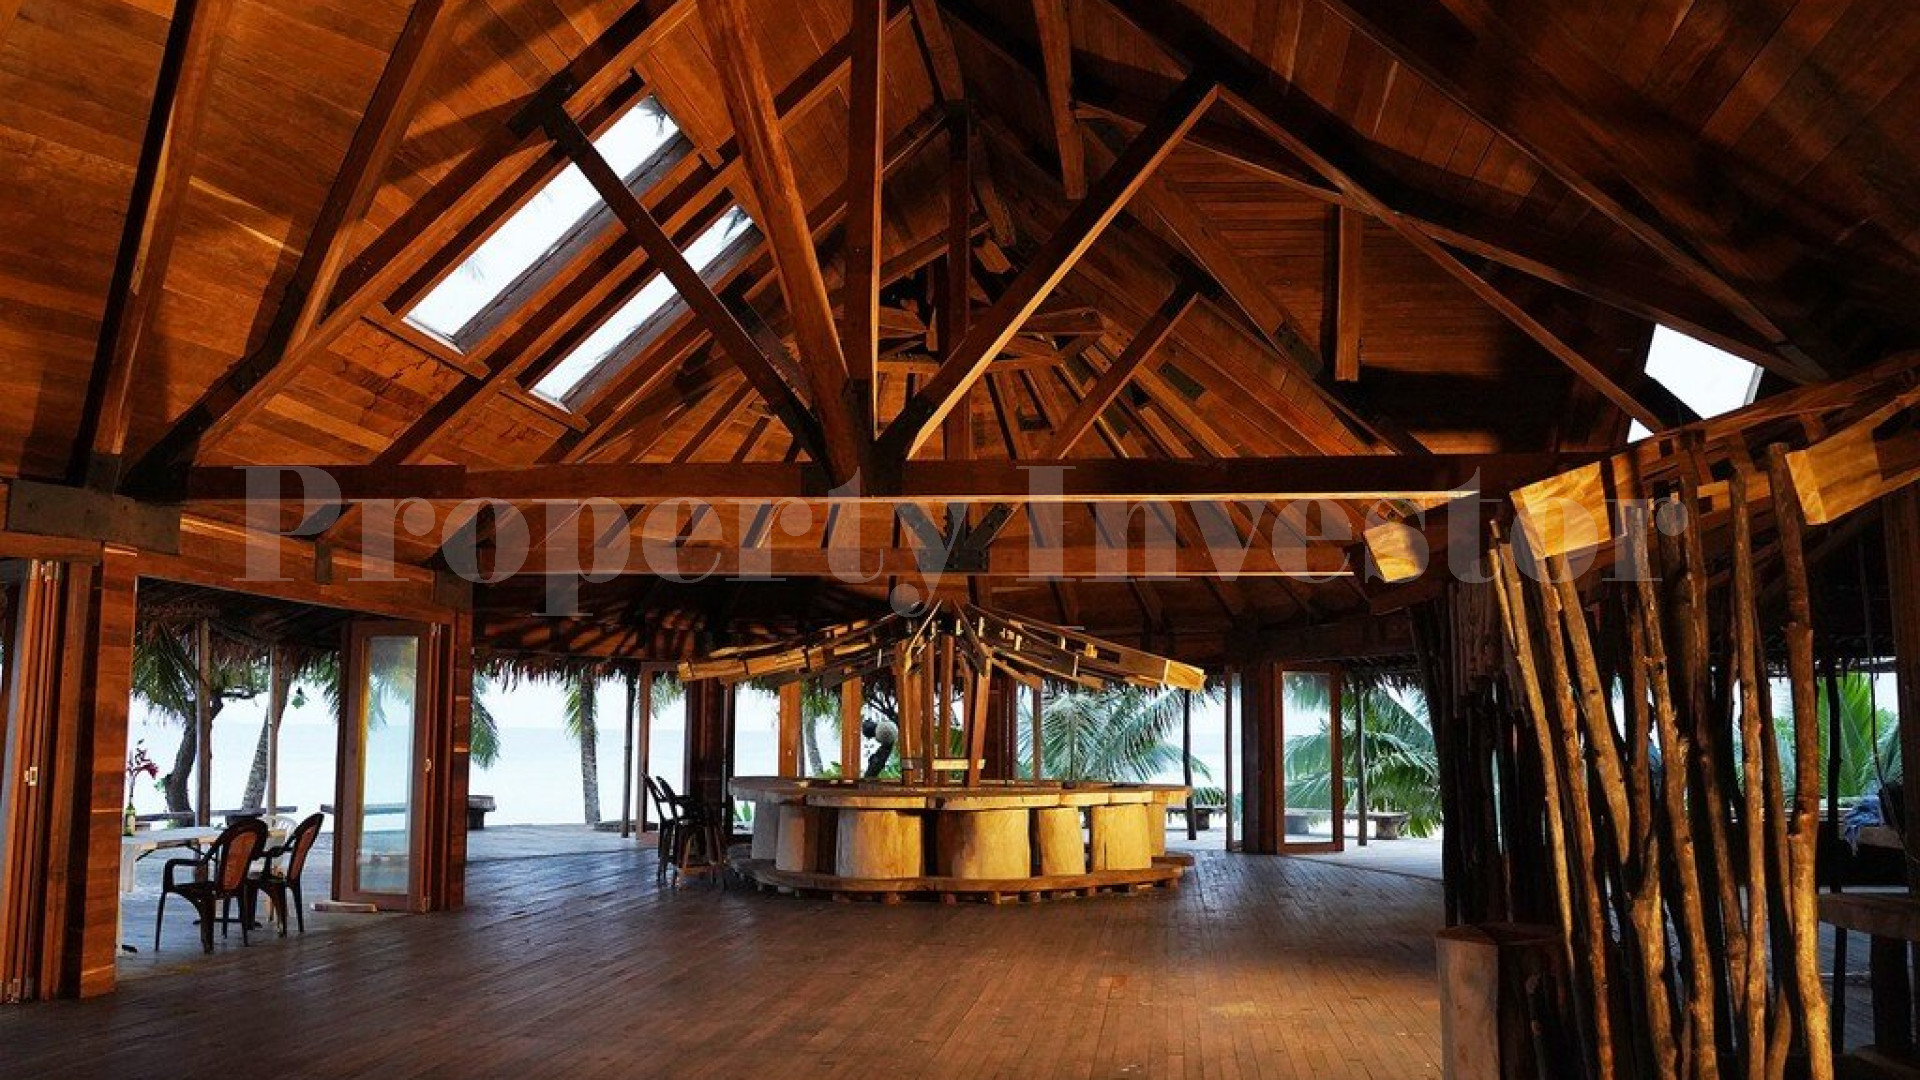 Продается живописный остров 4,8 га с резиденцией на Фиджи